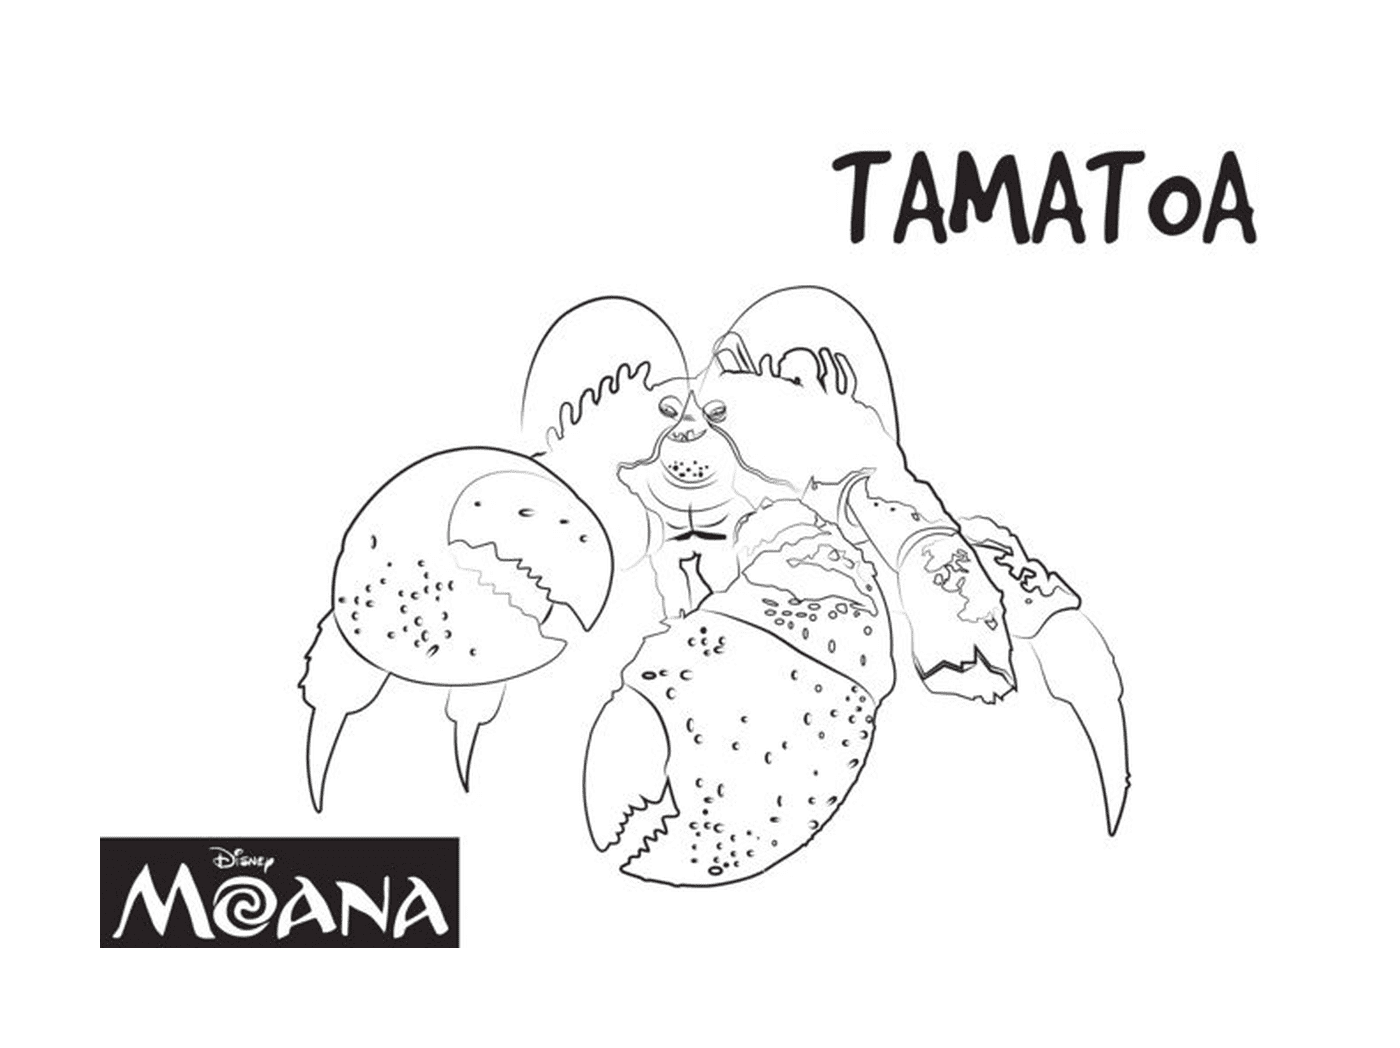  Tamatoa, exotic creature of Moana 